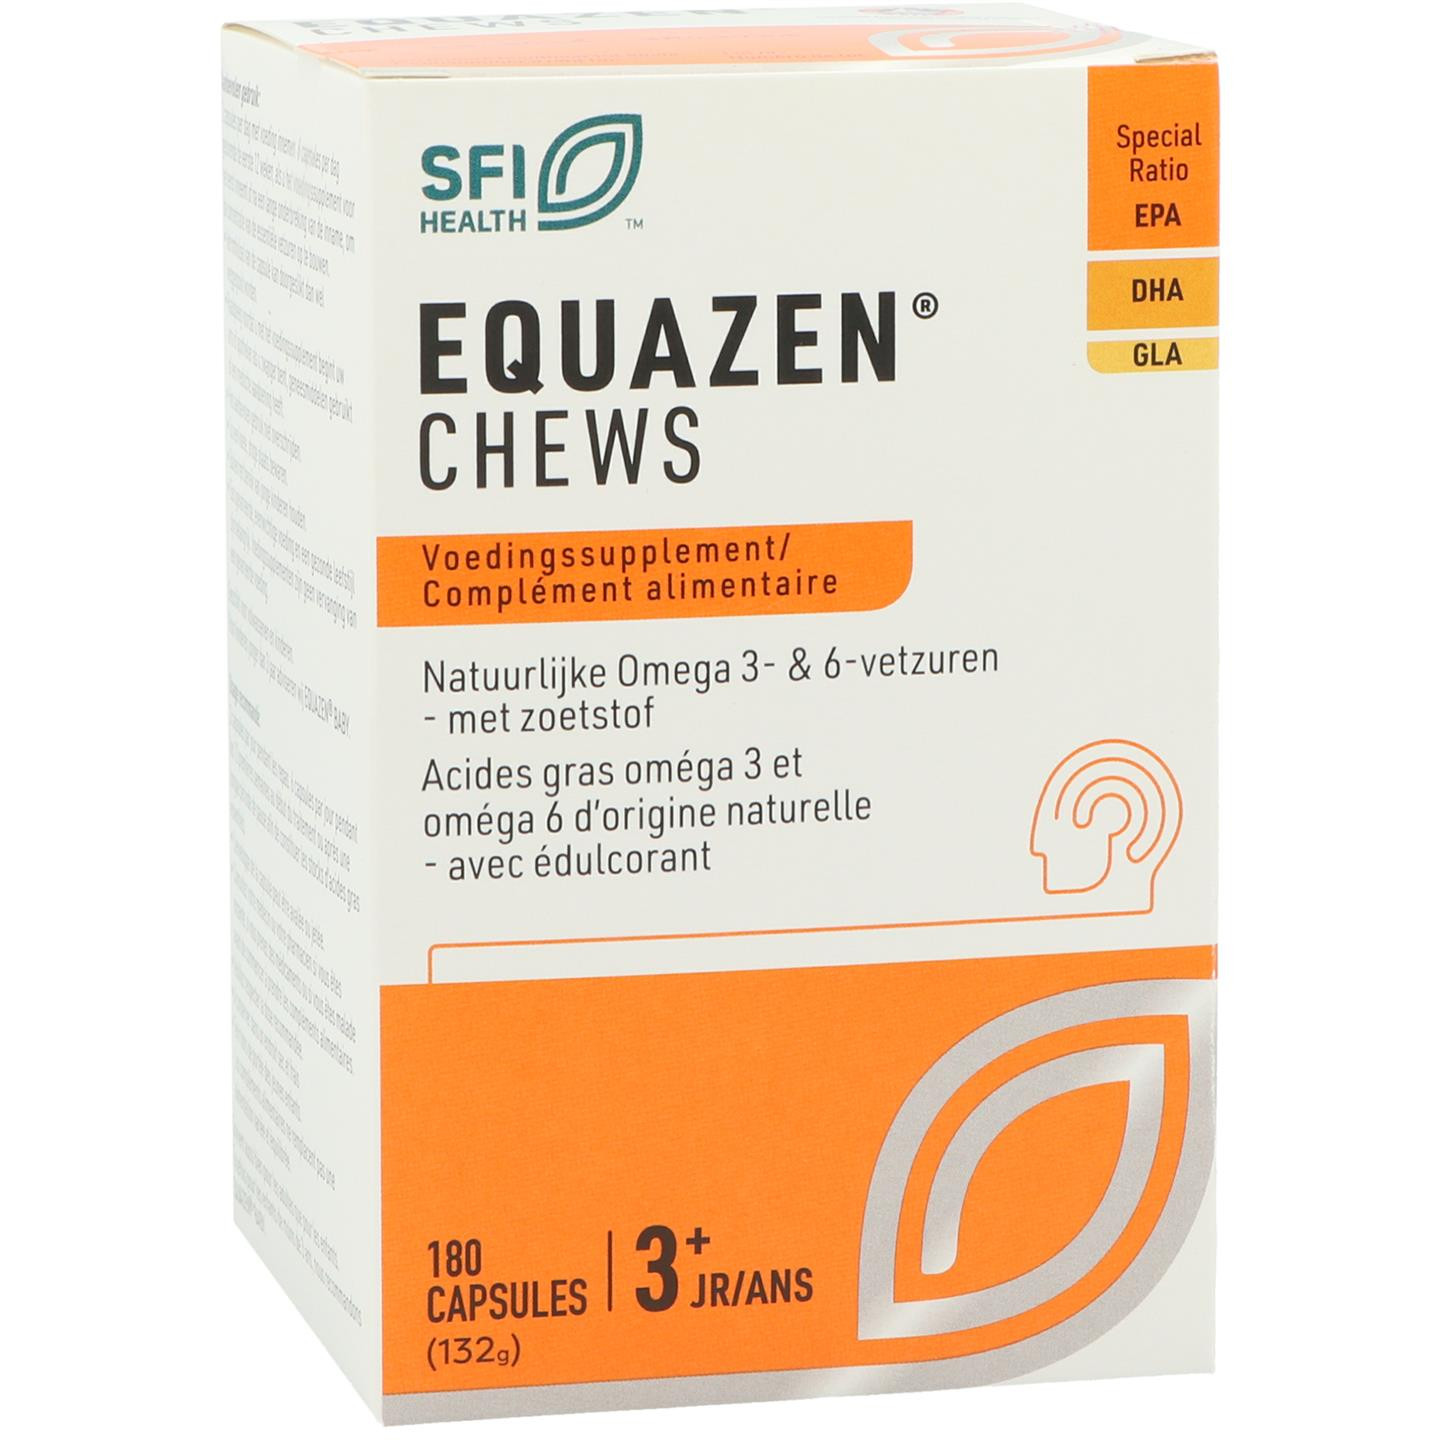 Equazen chews